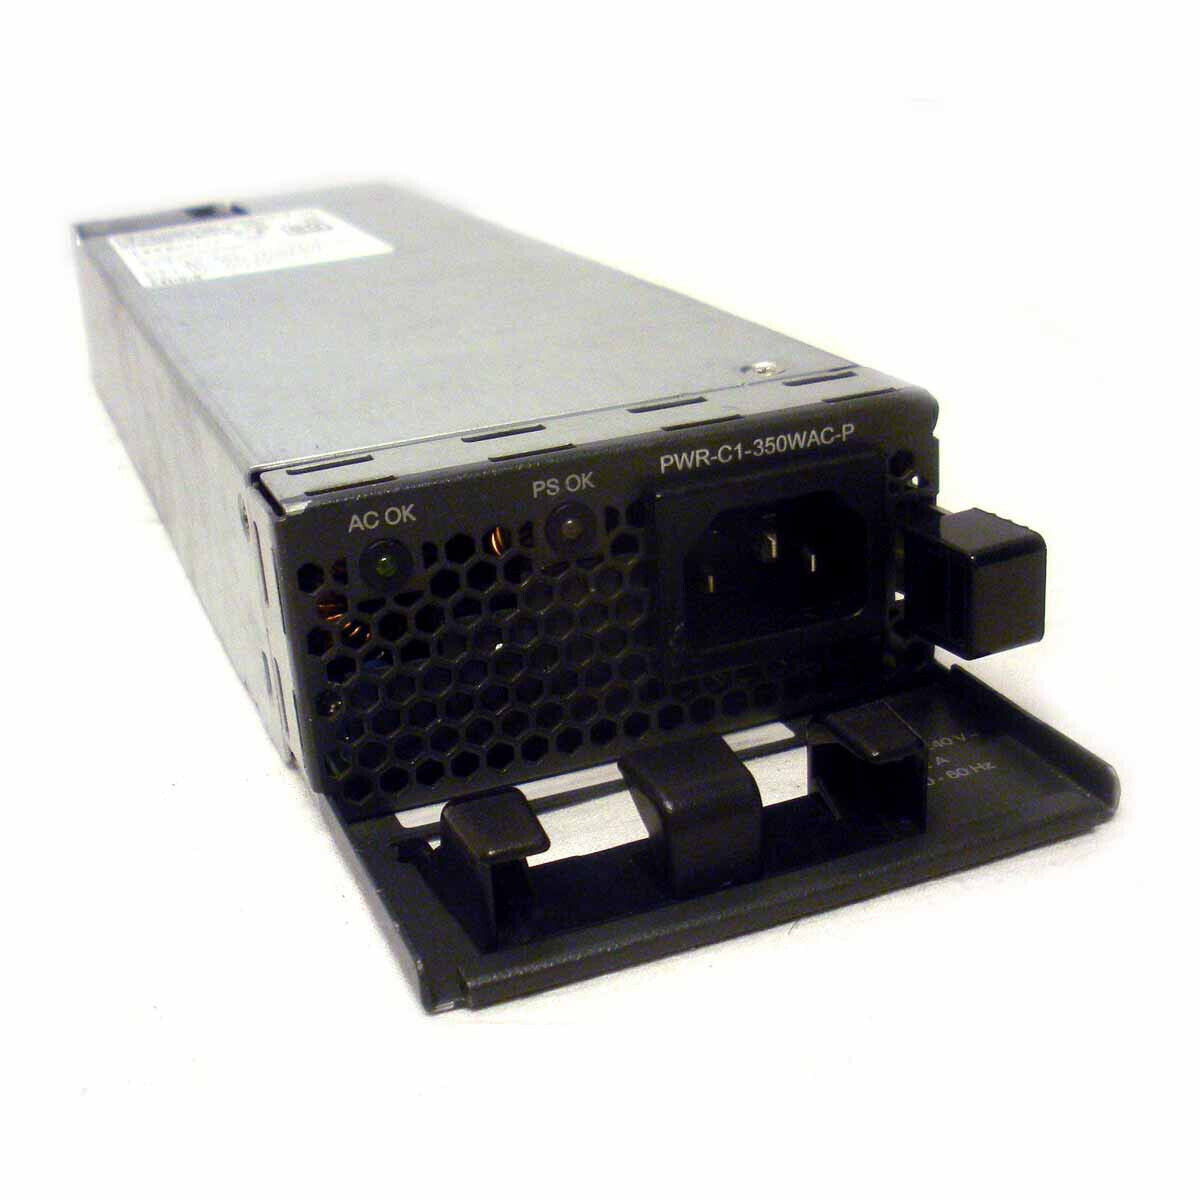 Cisco PWR-C1-350WAC-P Power Supply 350w AC